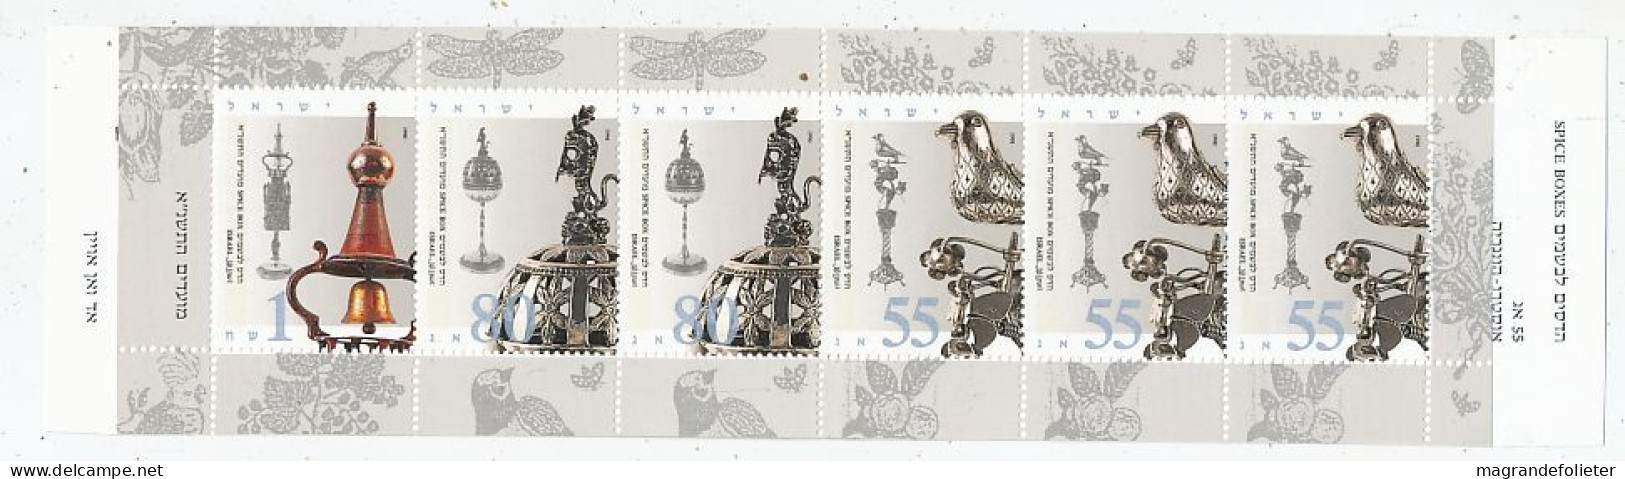 TIMBRE STAMP ZEGEL ISRAEL CARNET C-1111  XX - Postzegelboekjes